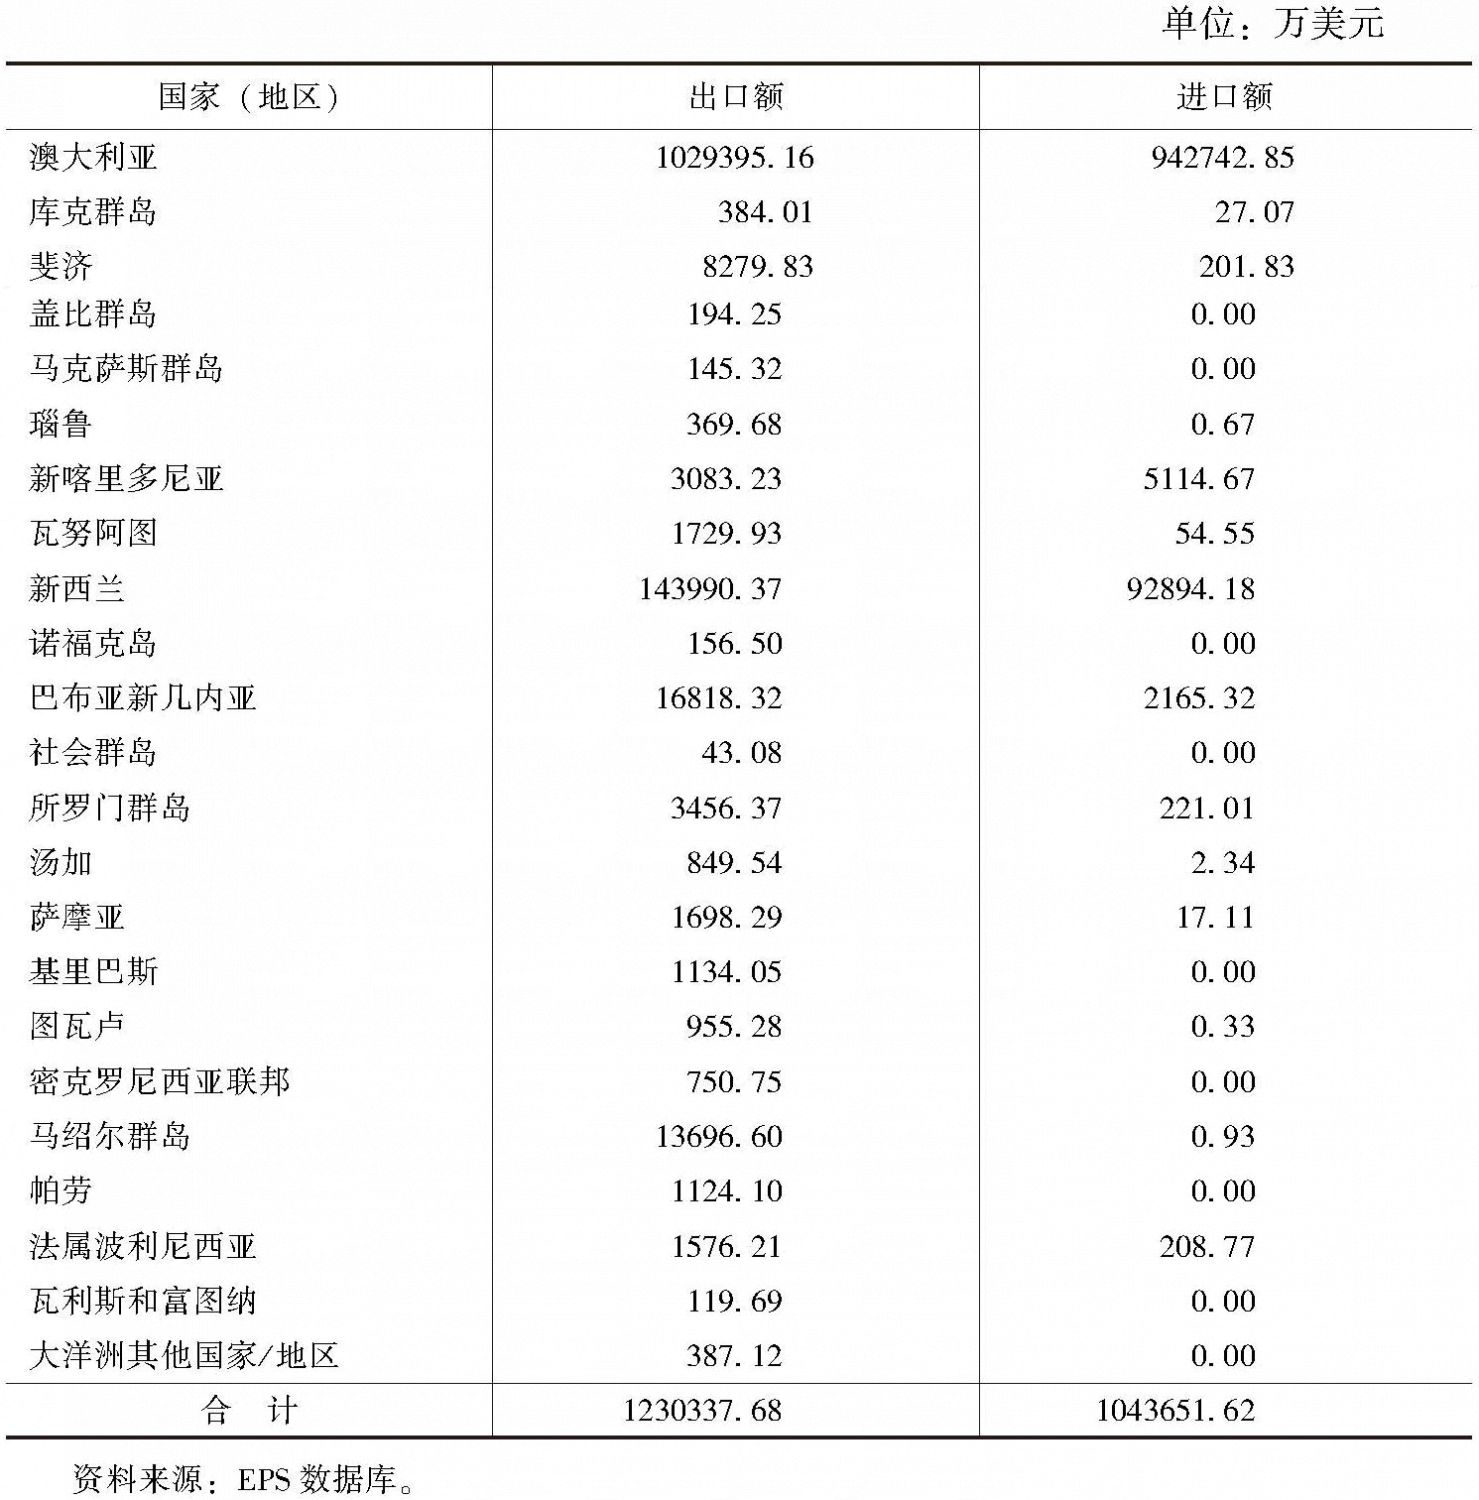 表11-2 2015年广东与南太国家进口和出口贸易统计